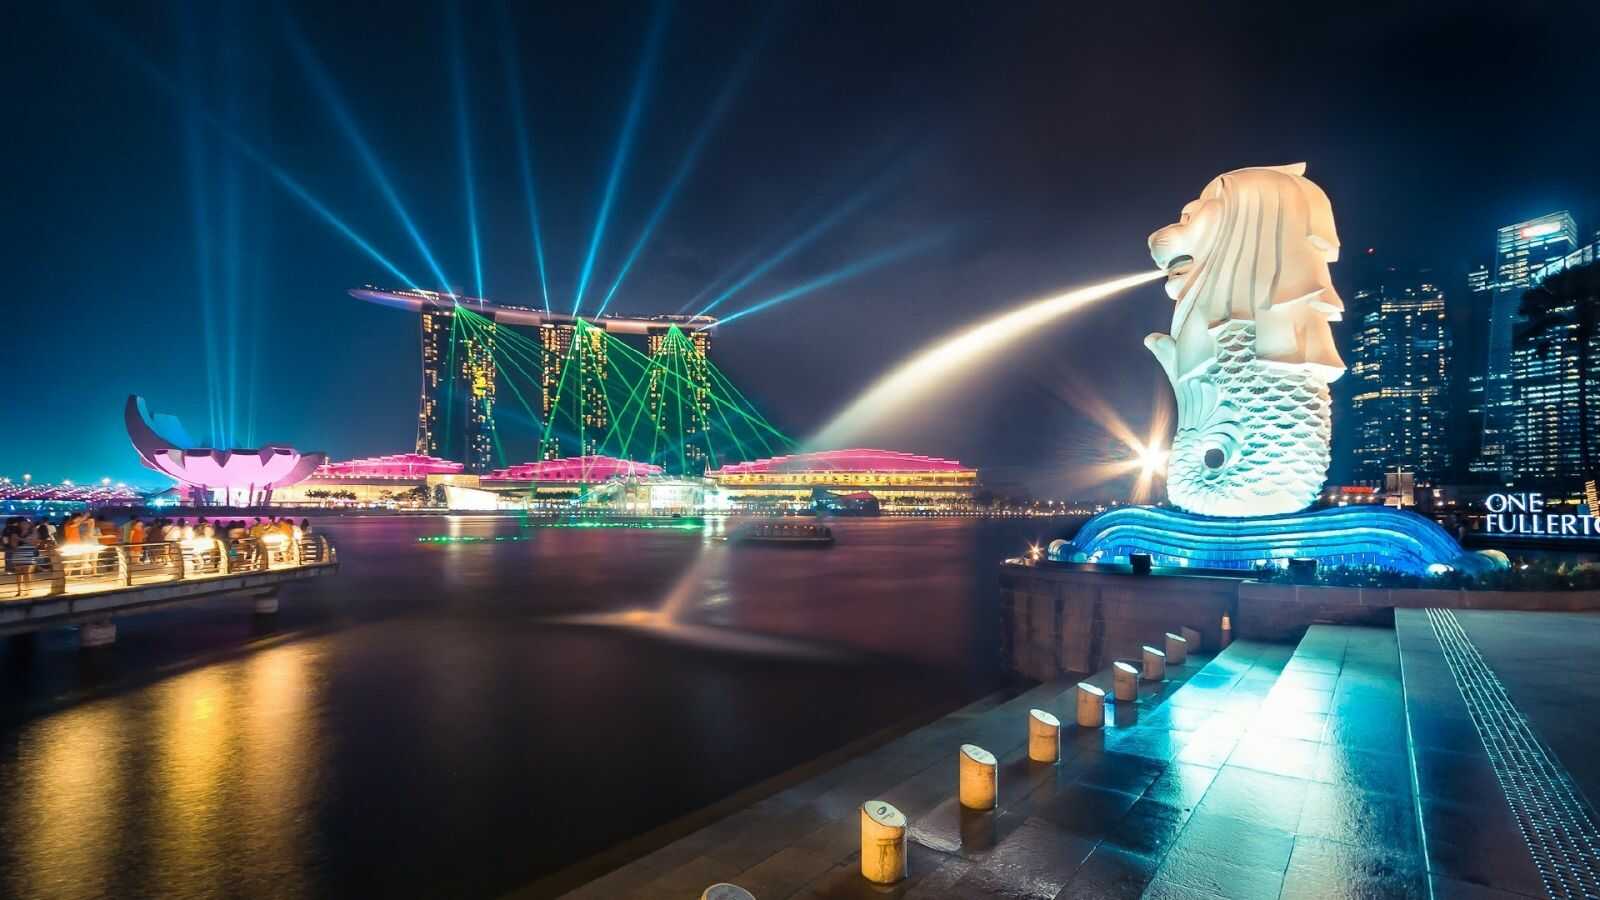 Tour du lịch Singapore - Malaysia Tết Nguyên Đán 5 ngày 4 đêm từ Sài Gòn